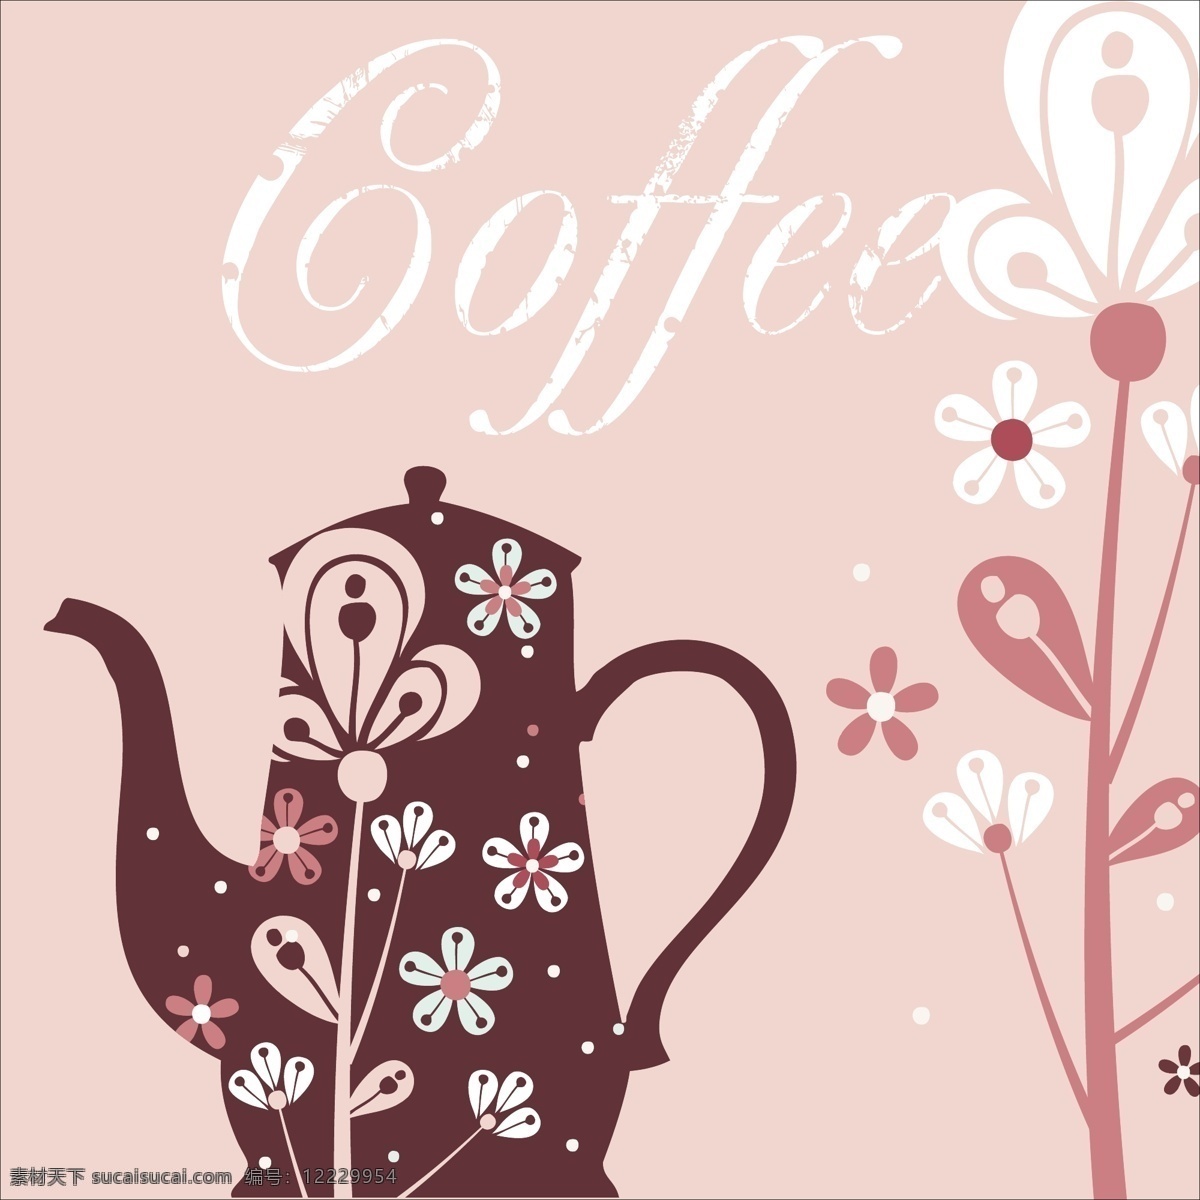 矢量 花纹 咖啡壶 茶壶 杯子 花朵 咖啡杯 矢量素材 矢量图 花纹花边